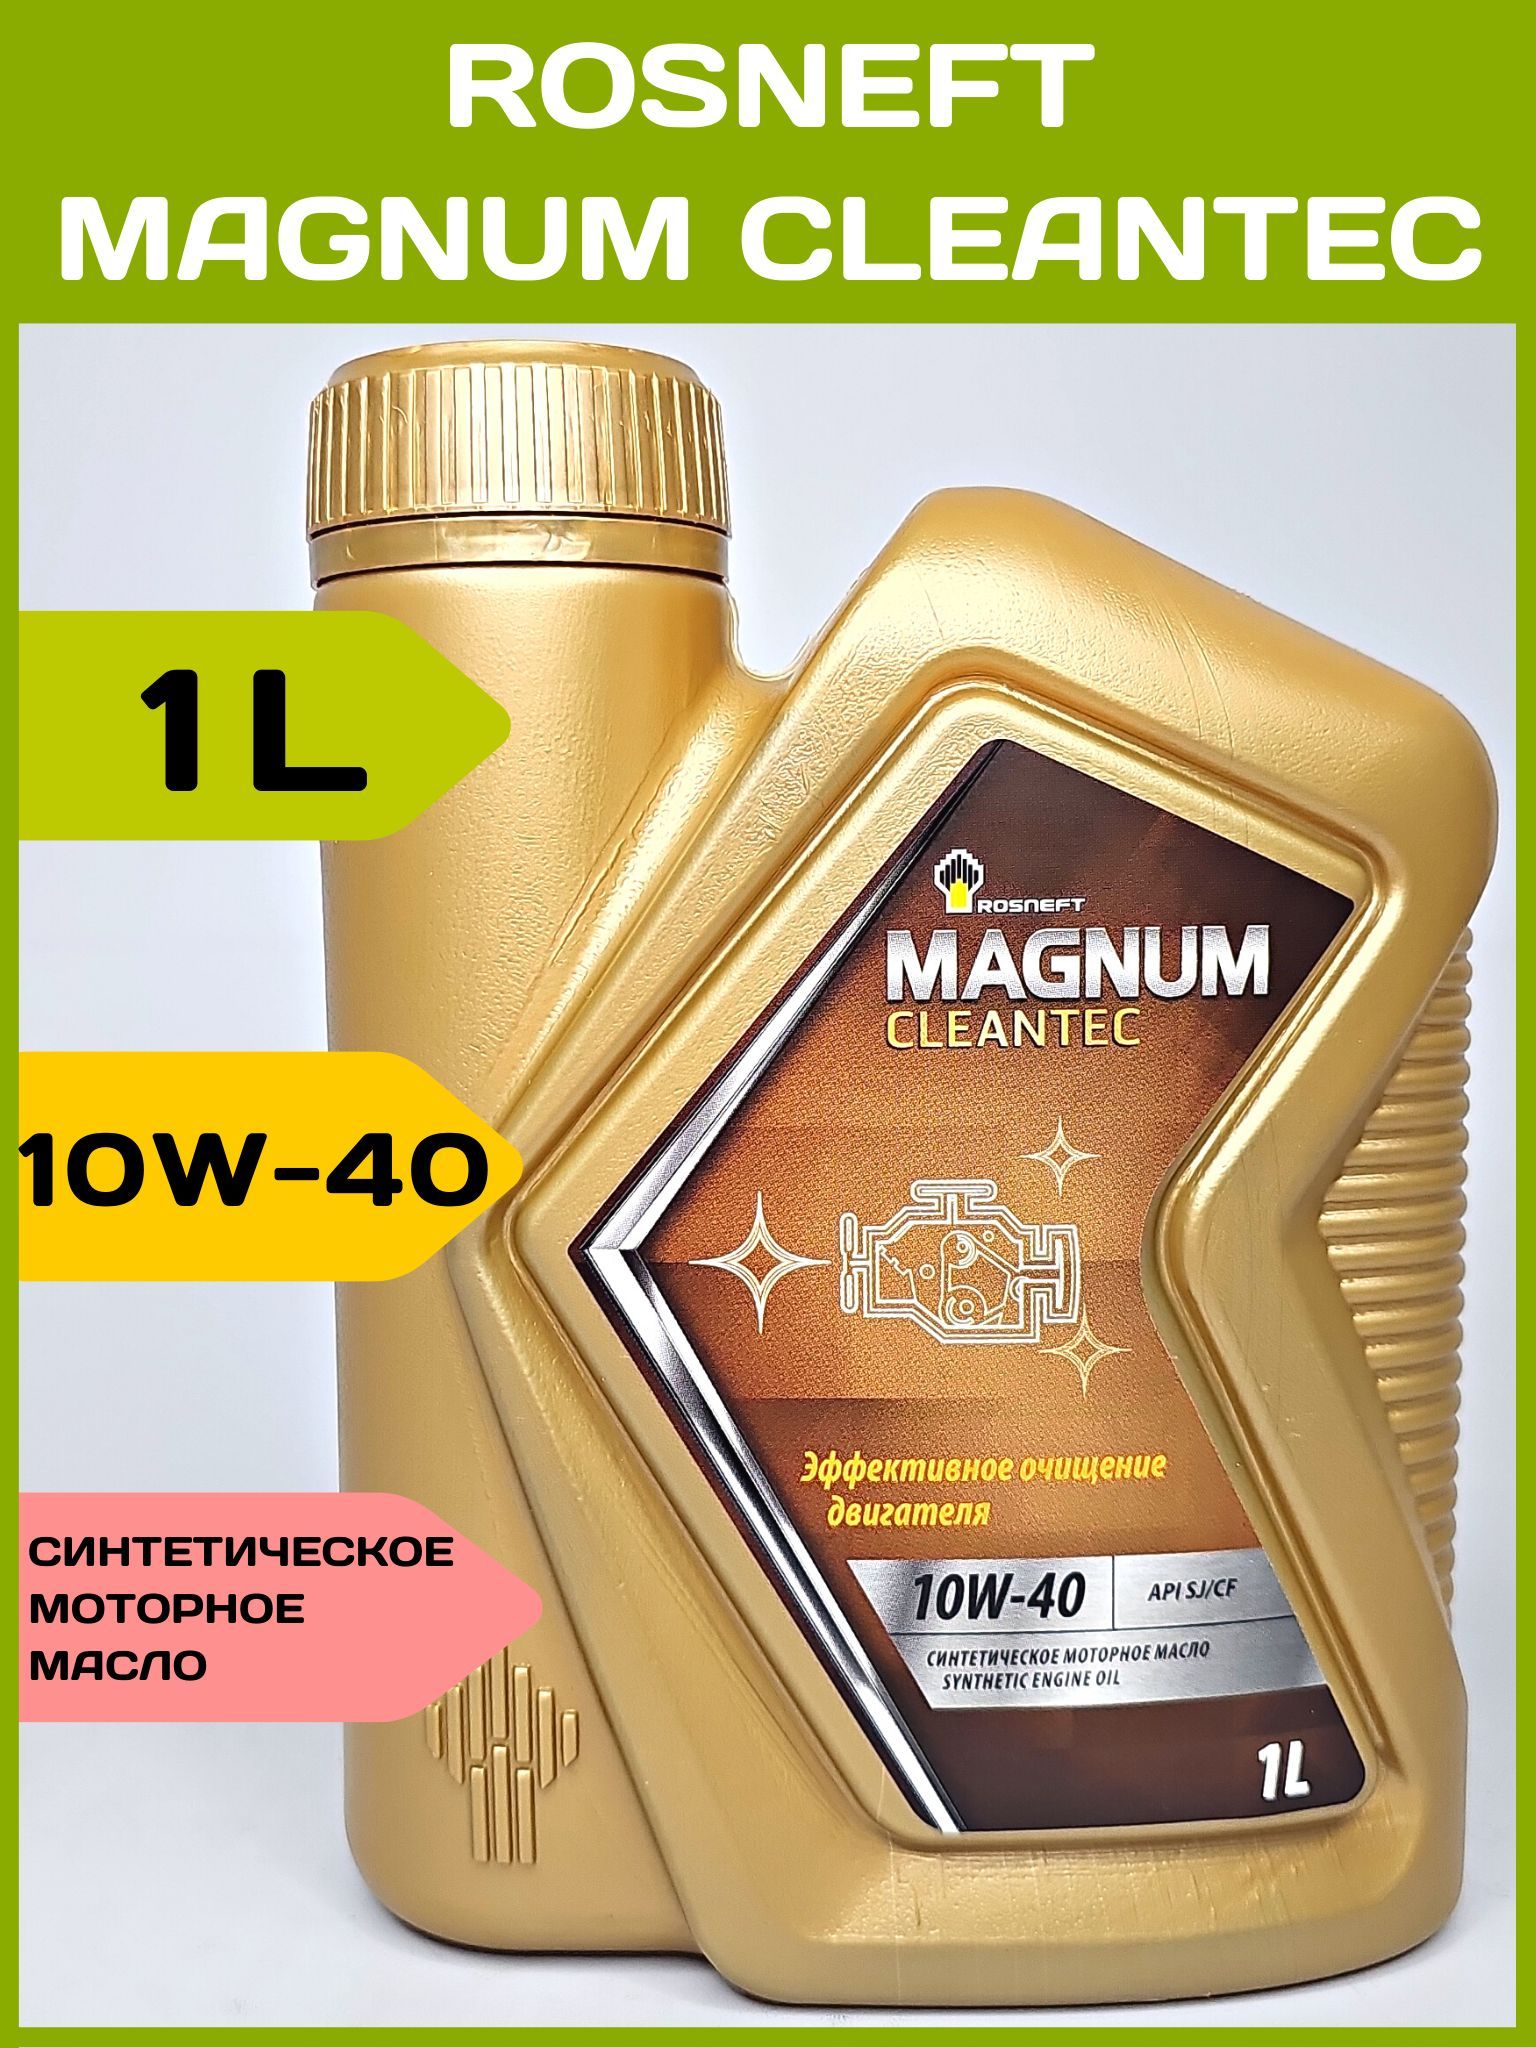 Роснефть магнум 10w 40 полусинтетика цена. Роснефть Магнум 10w 40. Роснефть Magnum CLEANTEC 10w-40. Rosneft Magnum Maxtec 10w-40. Роснефть Магнум реклама.